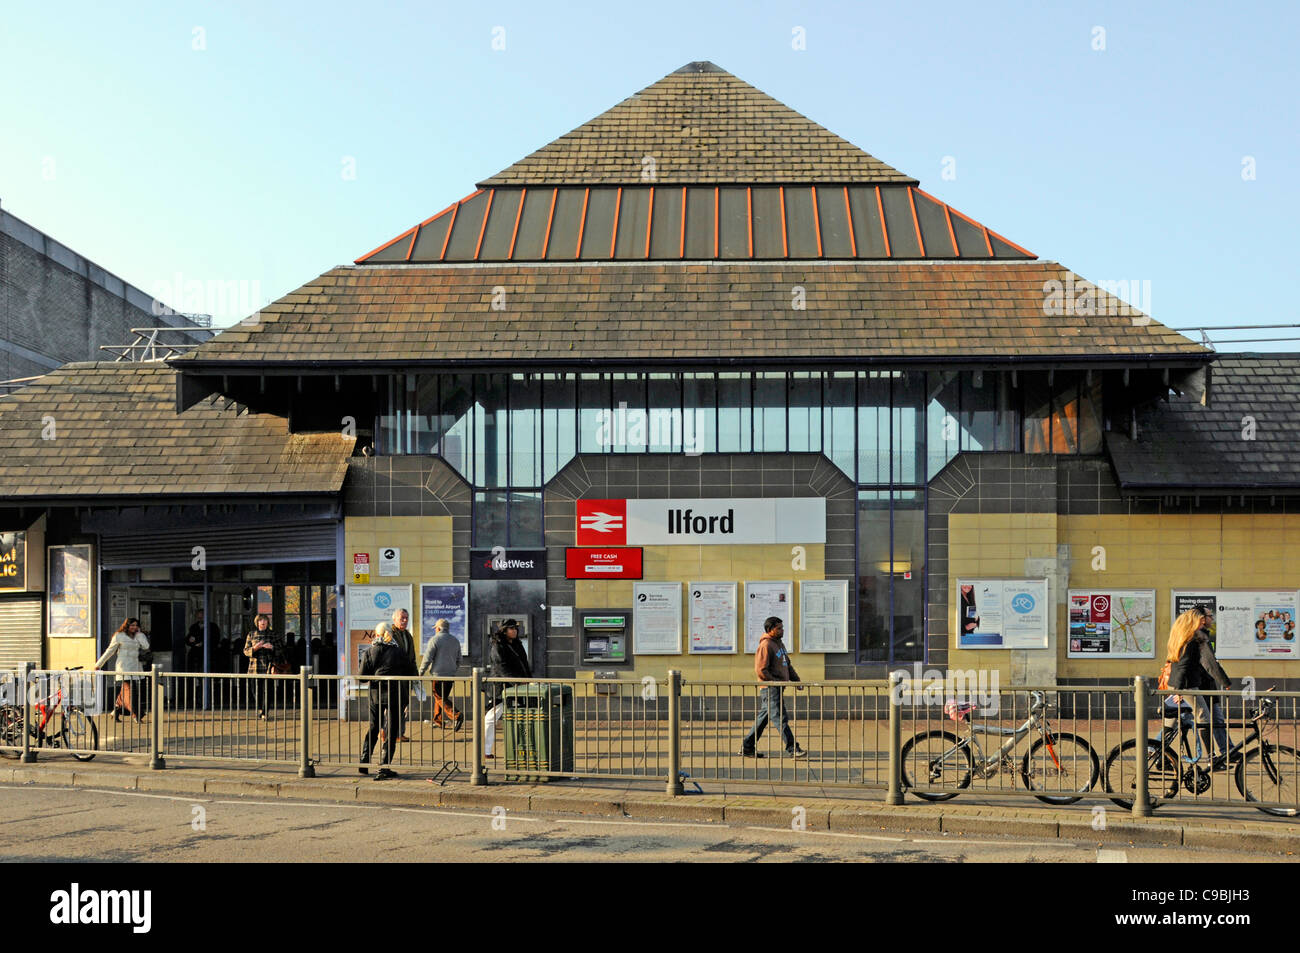 Ilford Bahnhof Fassade öffentliche Verkehrsmittel & Straßenszene Menschen vor dem Eingang Redbridge East London England Großbritannien (Ilford war in Essex) Stockfoto